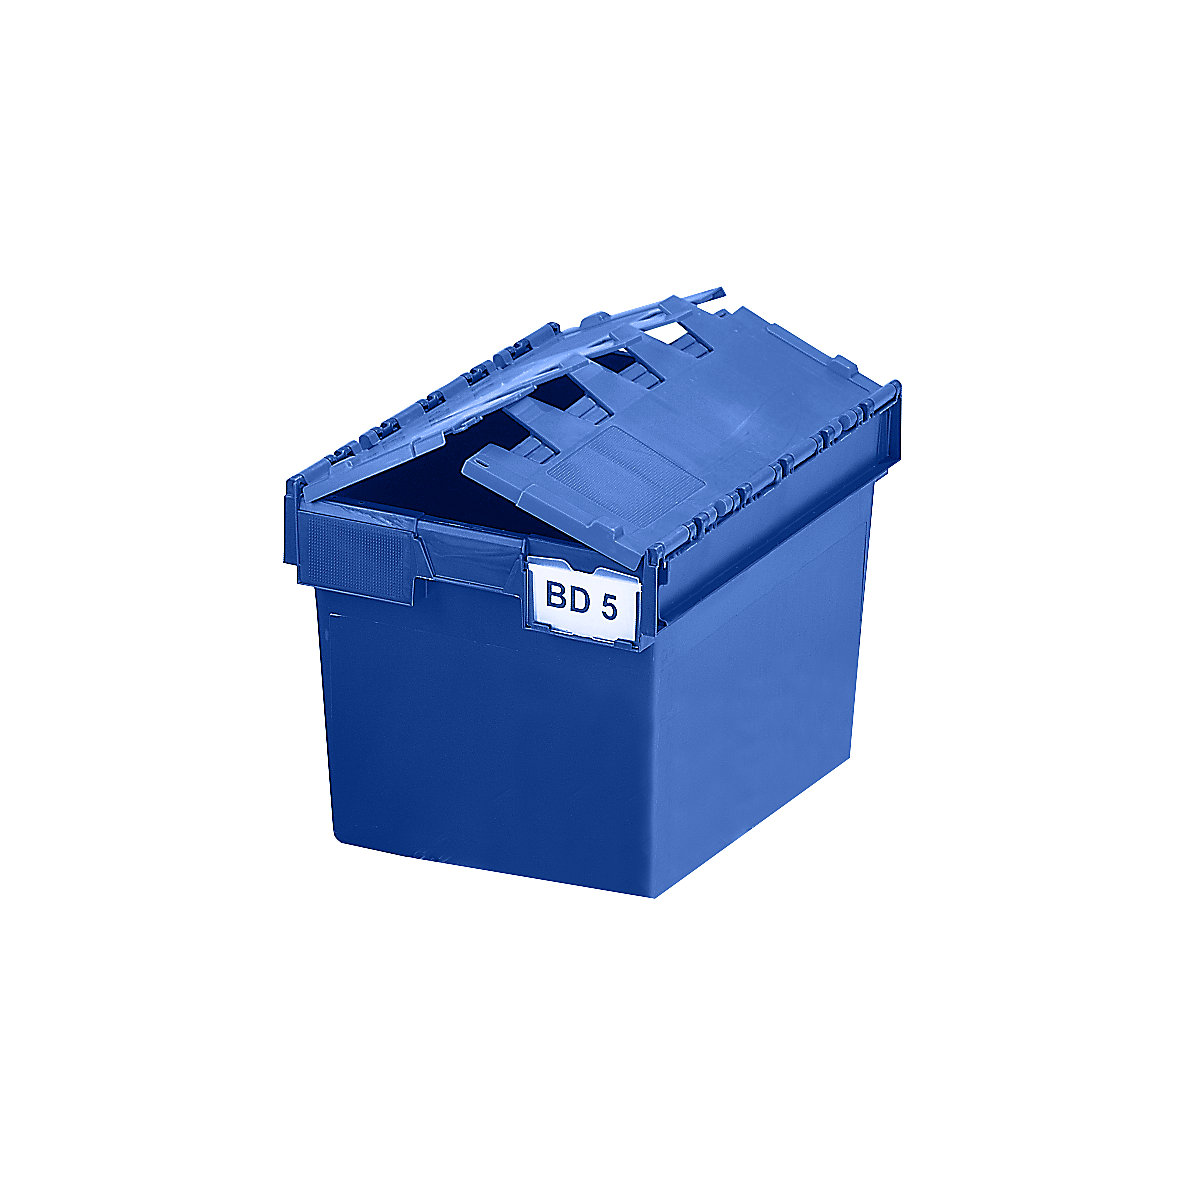 Mehrweg-Stapelbehälter KAIMAN, Inhalt 64 Liter, LxBxH 600 x 400 x 365 mm, blau